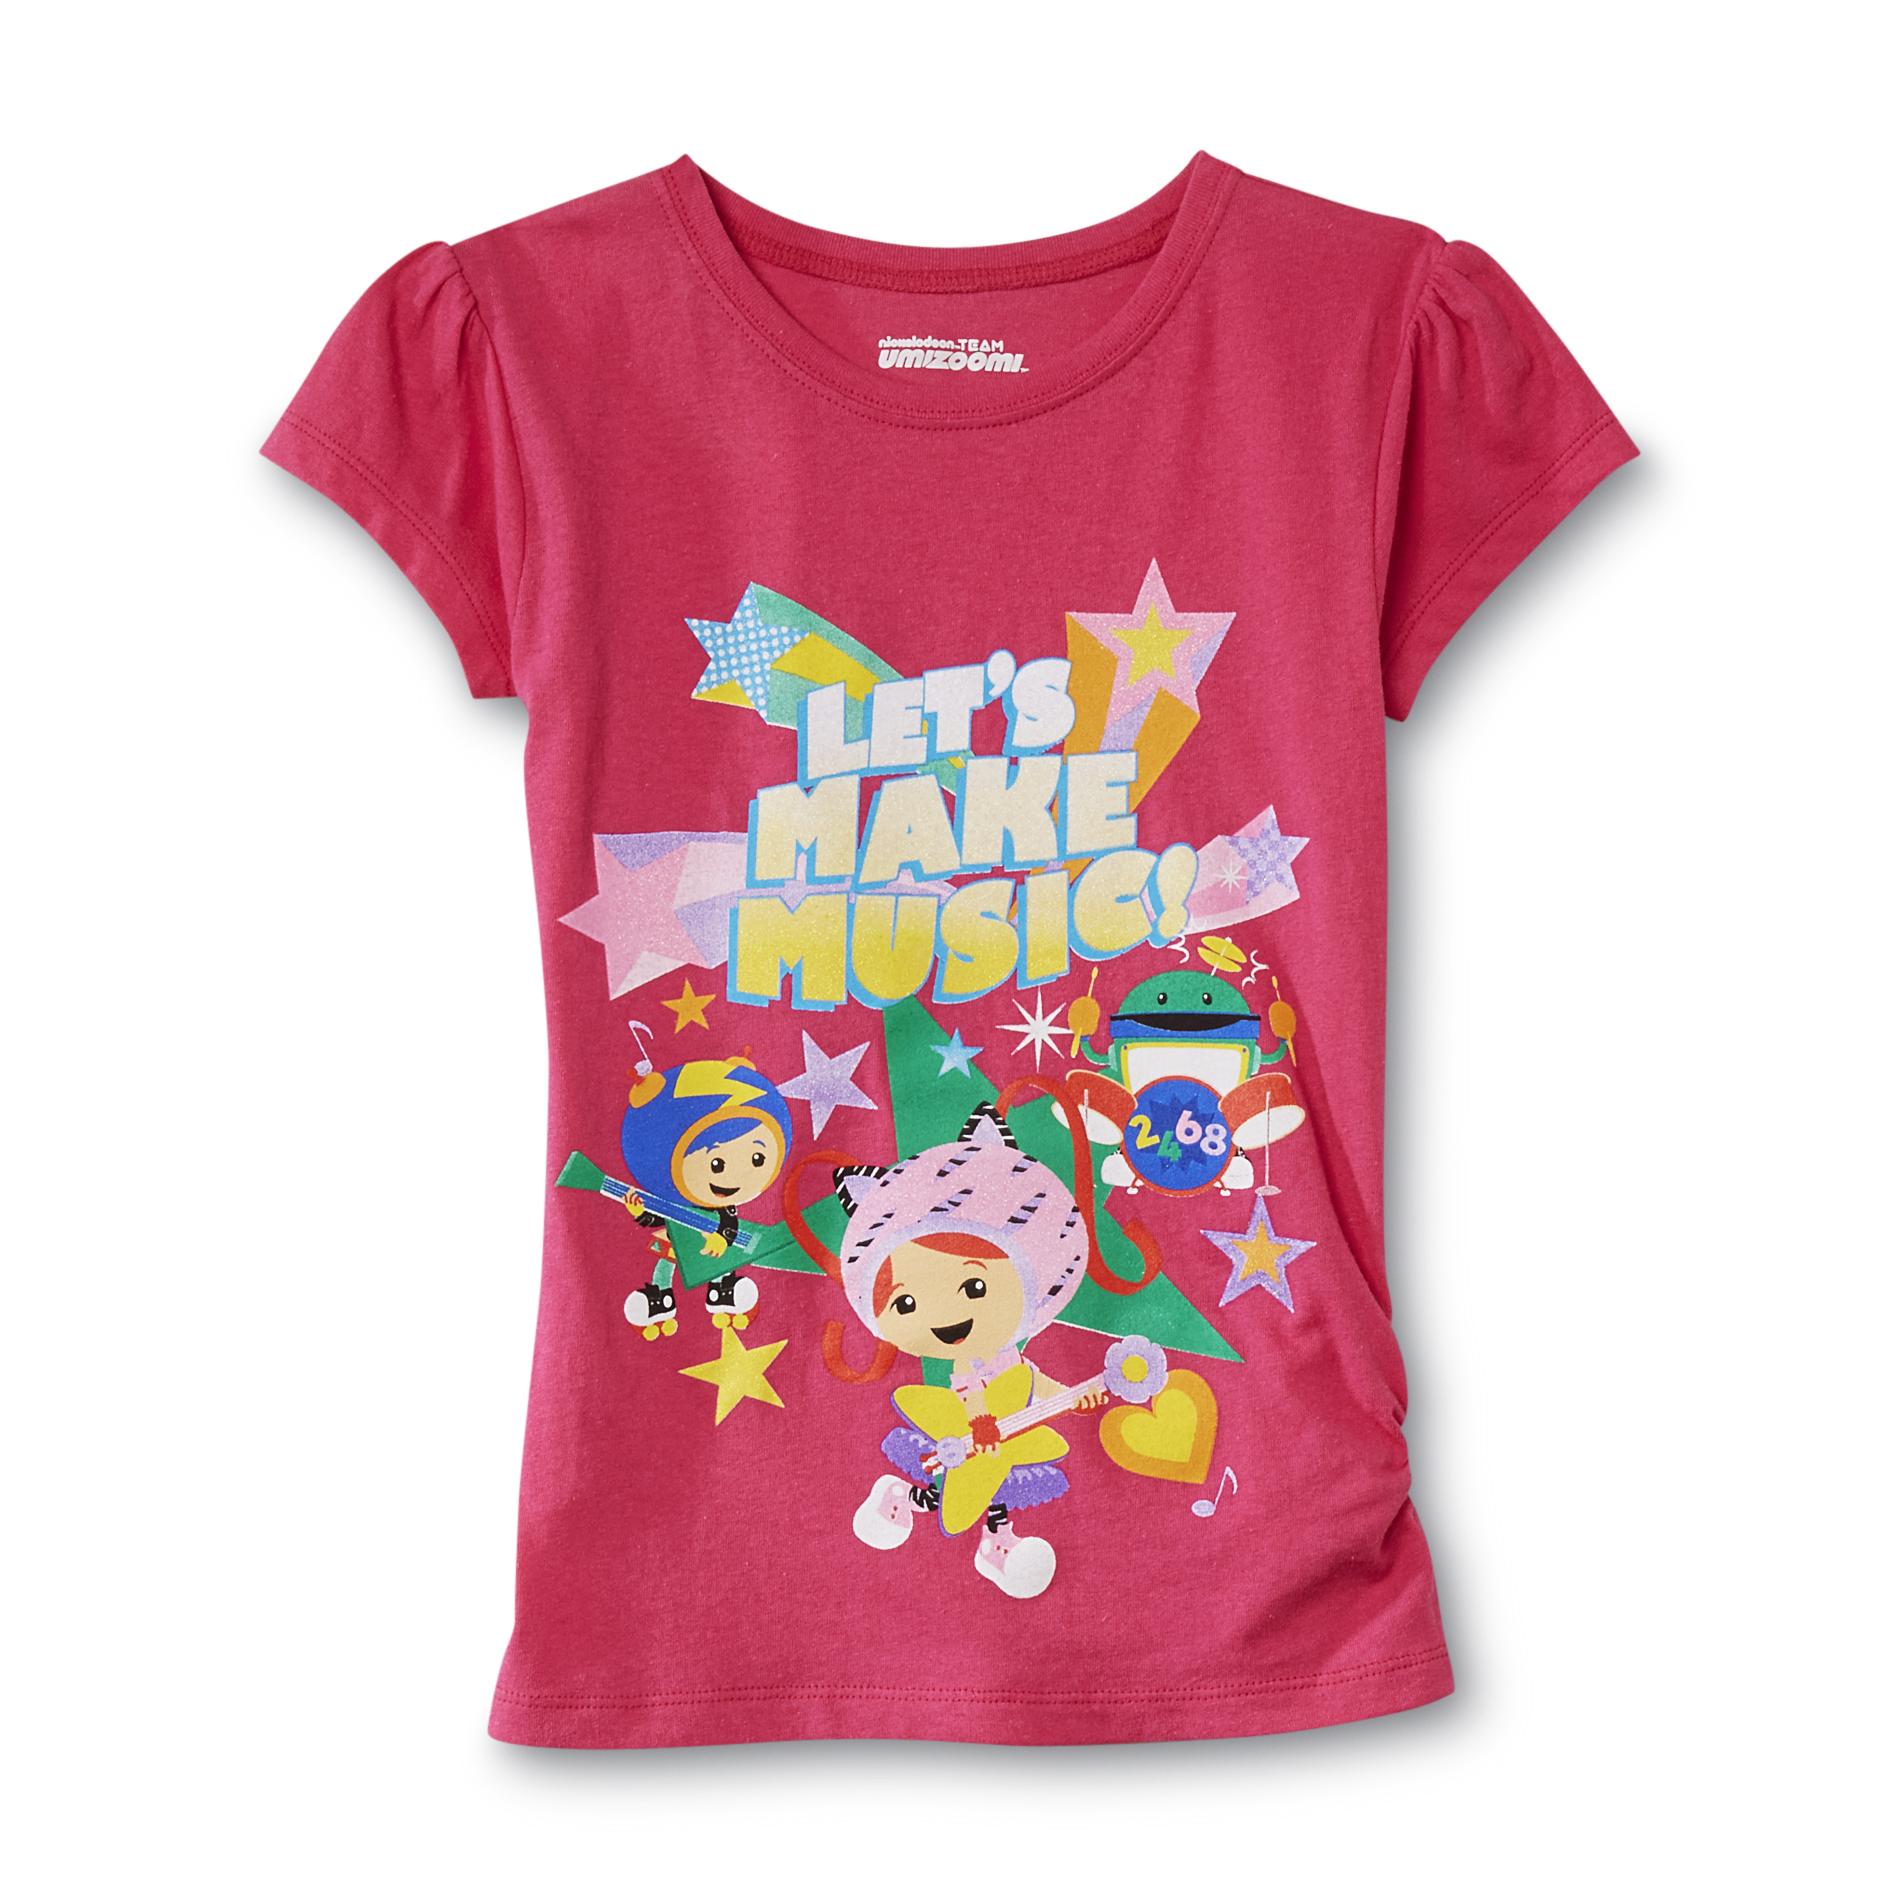 Nickelodeon Team Umizoomi Girl's Graphic T-Shirt